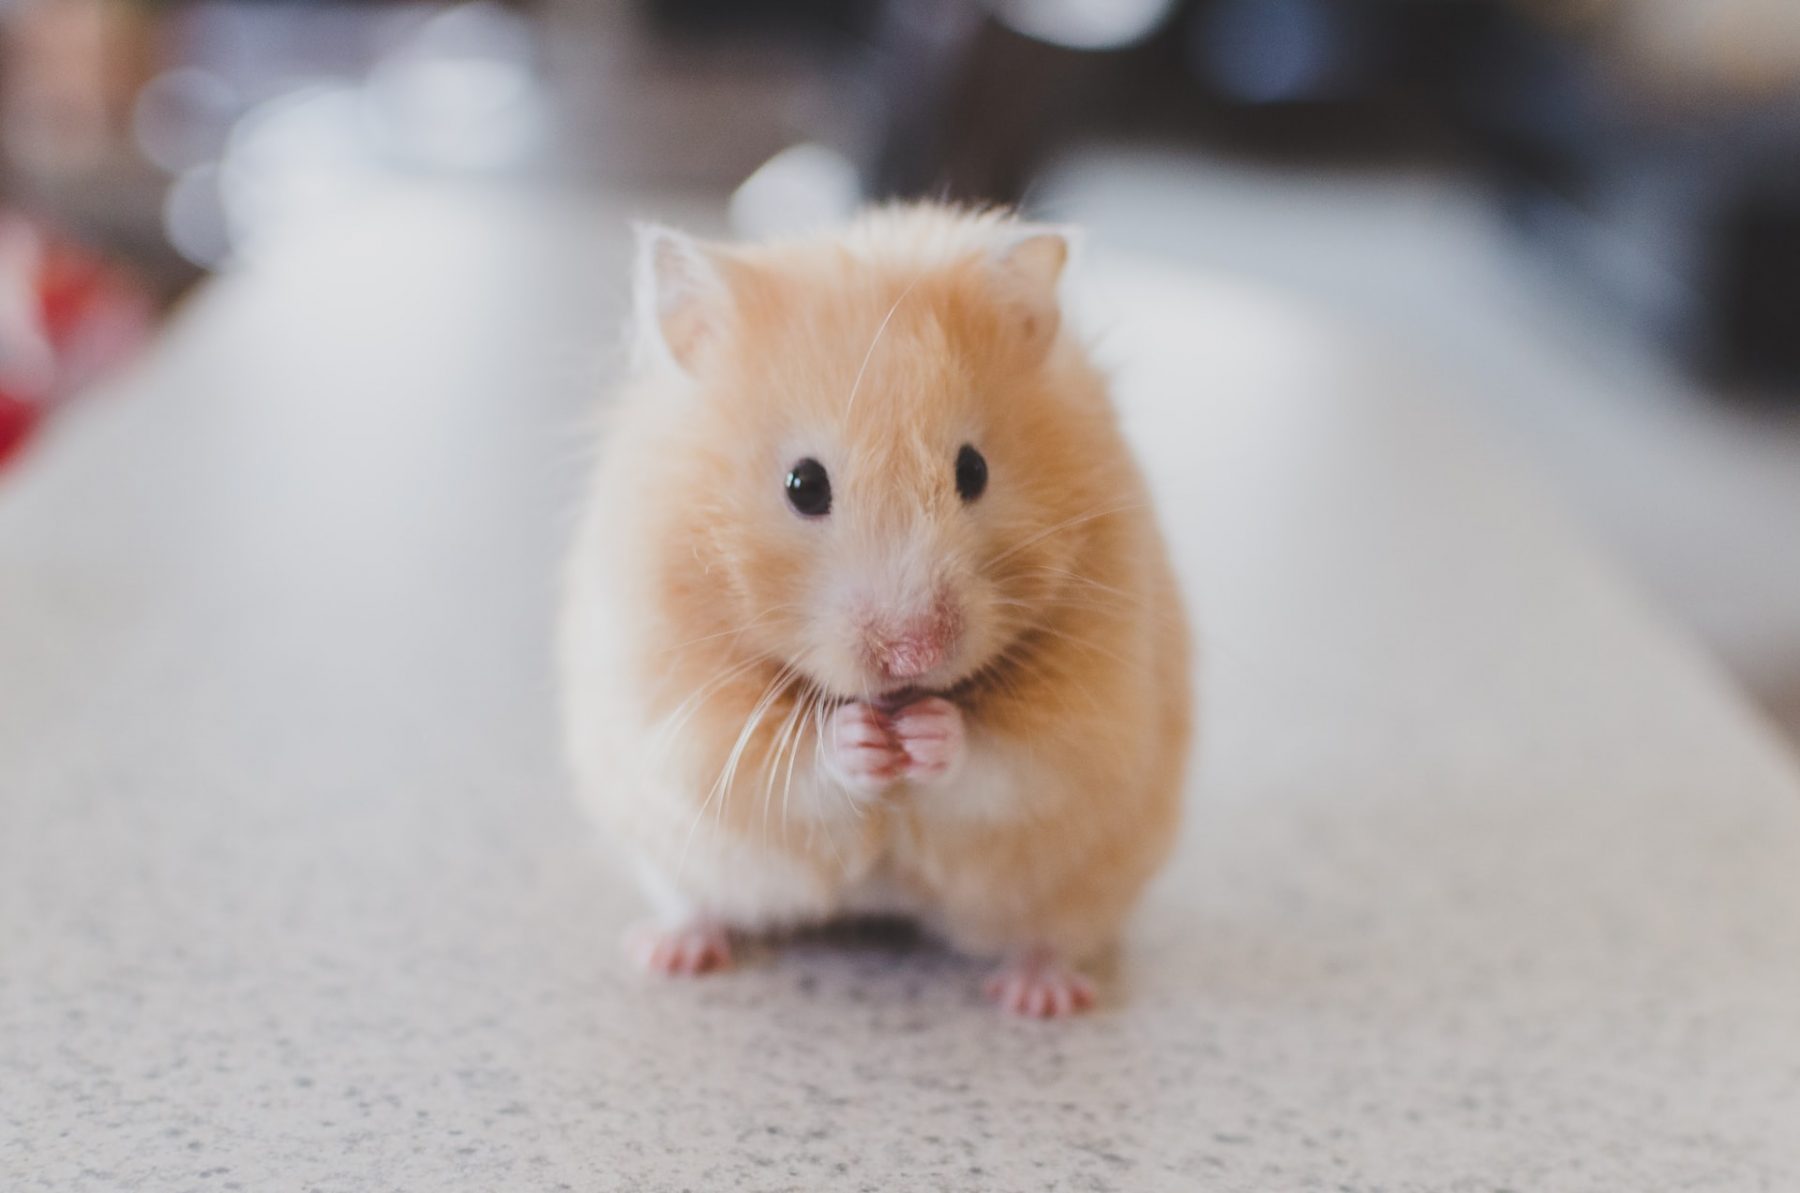 Επιμήκυνση ζωής: Οι επιστήμονες ανέτρεψαν τη γήρανση σε ποντίκια. Στους ανθρώπους;